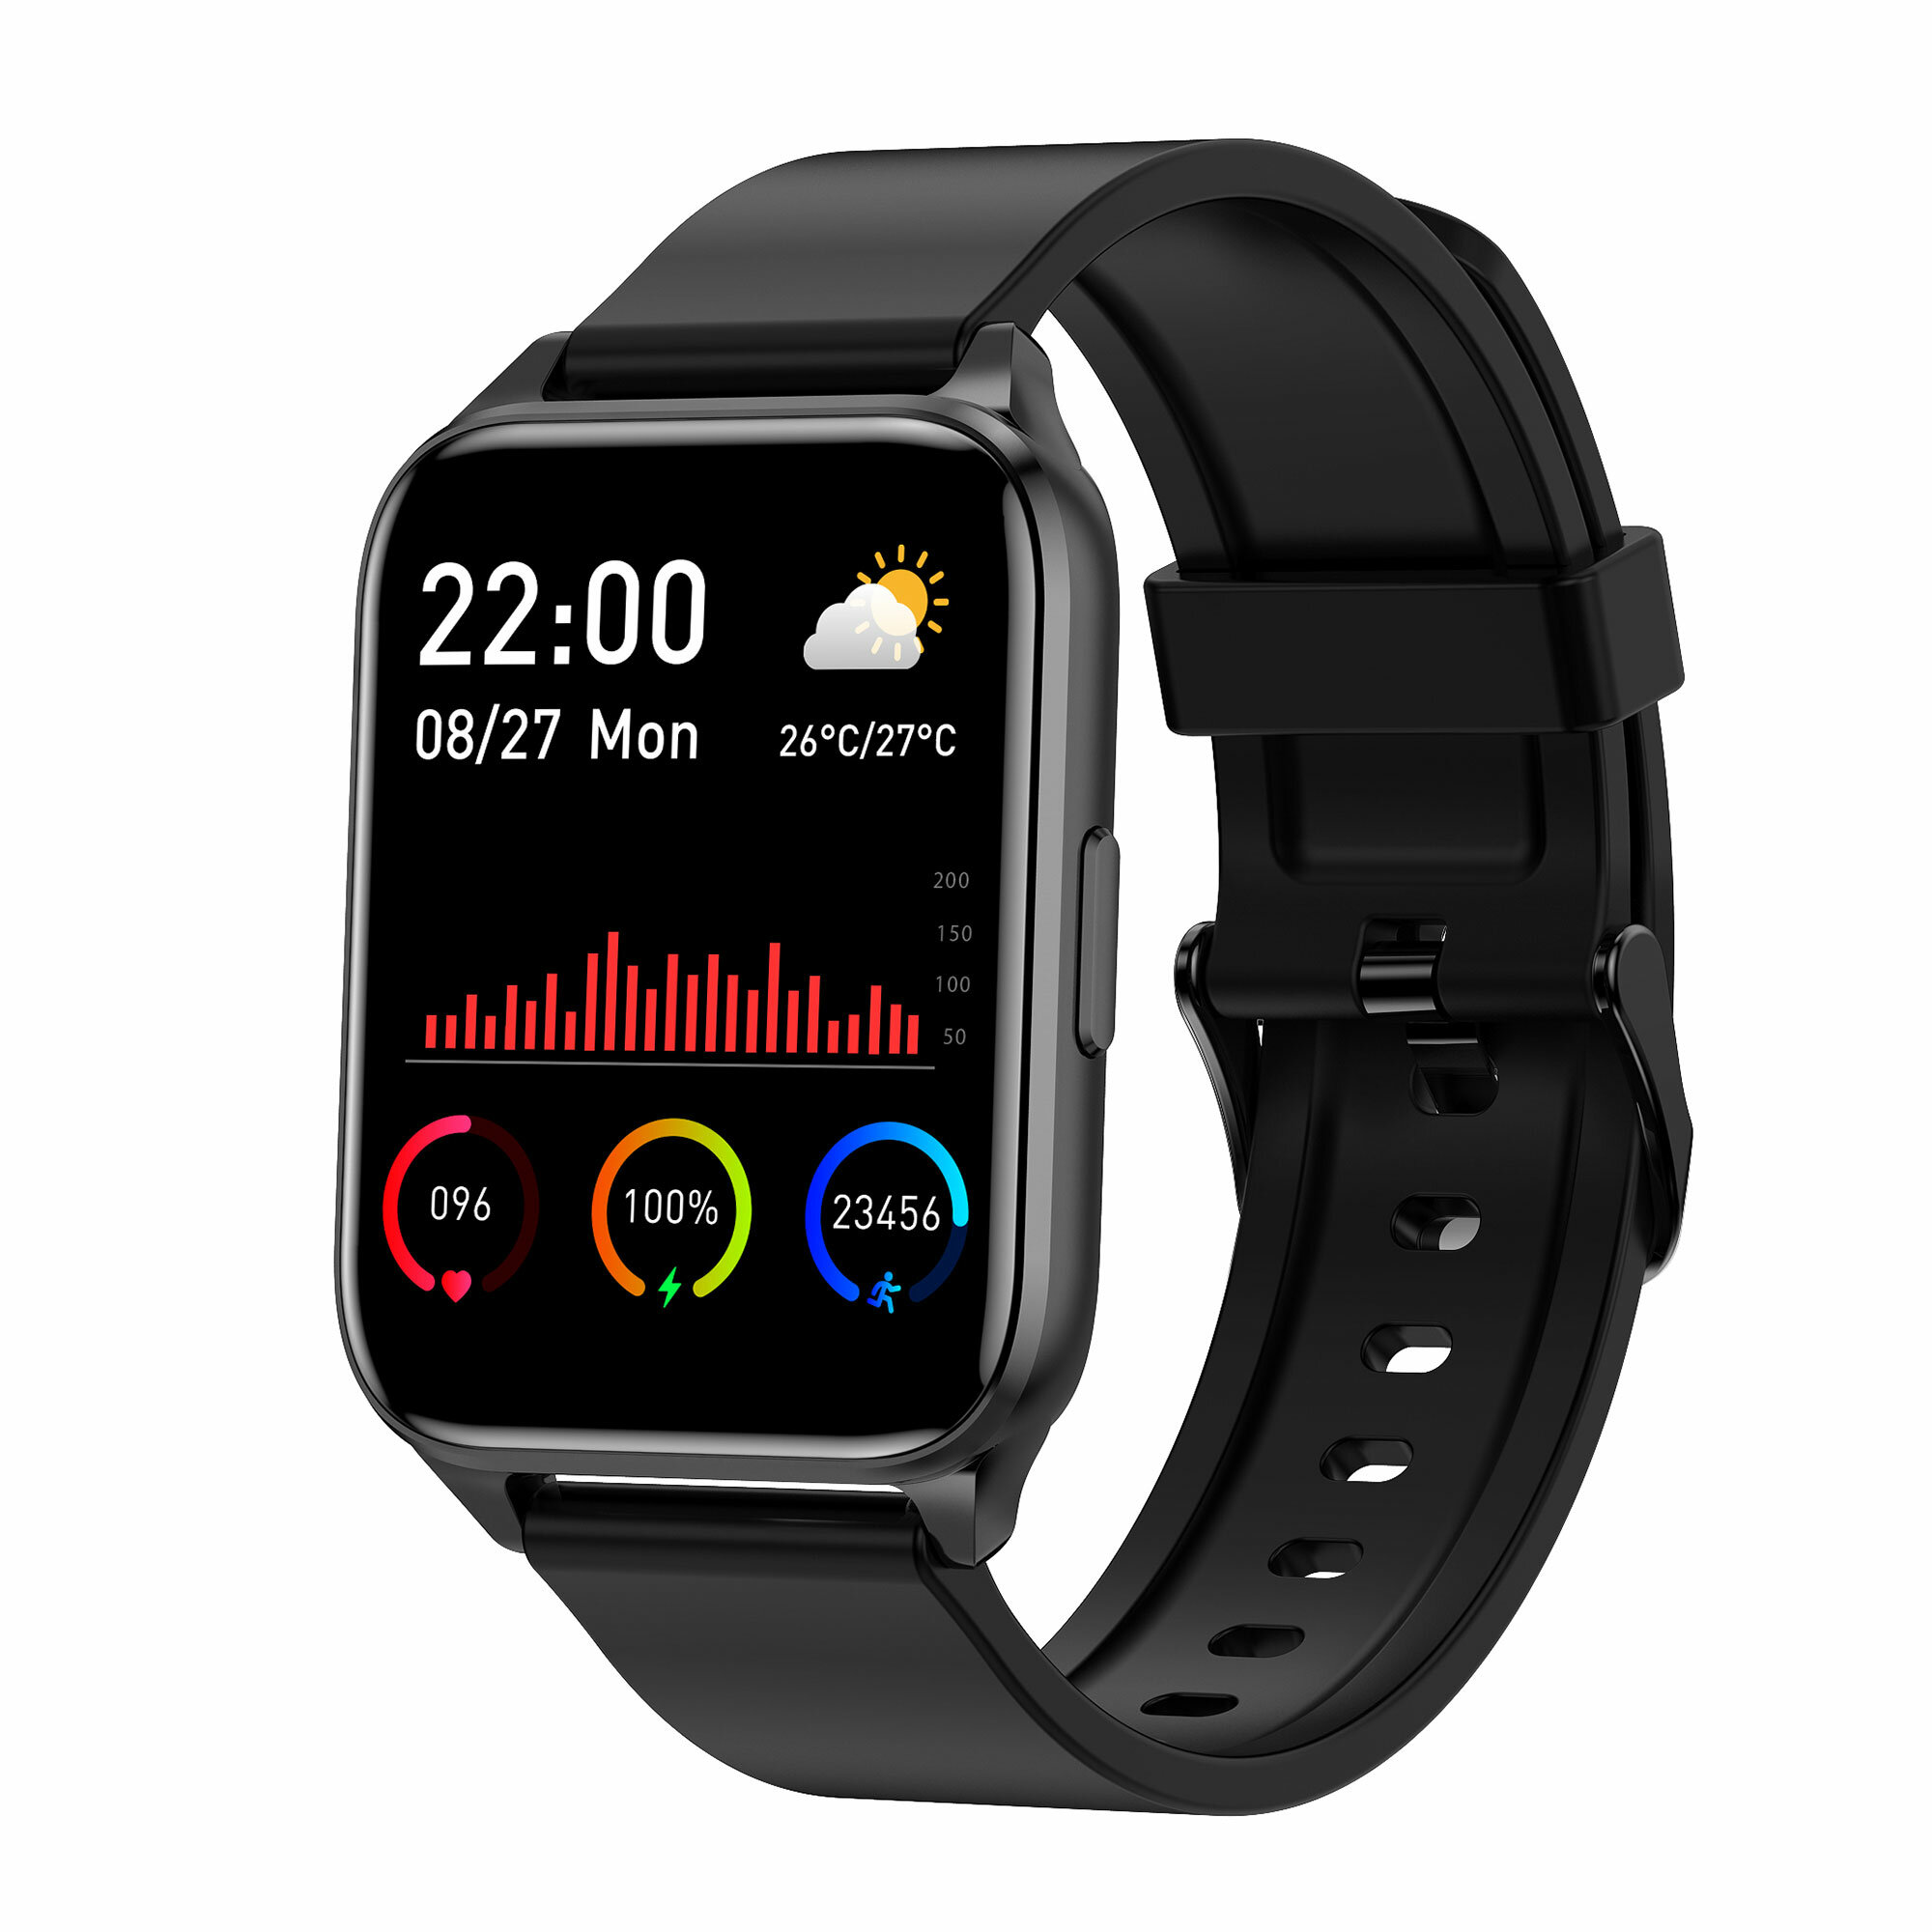 Στα 18.27 € από αποθήκη Κίνας | TranyaGo 1.69 inch Full Touch Screen Real-time Heart Rate Multi-sport Modes 200mAh Music Control IP68 Waterproof Smart Watch